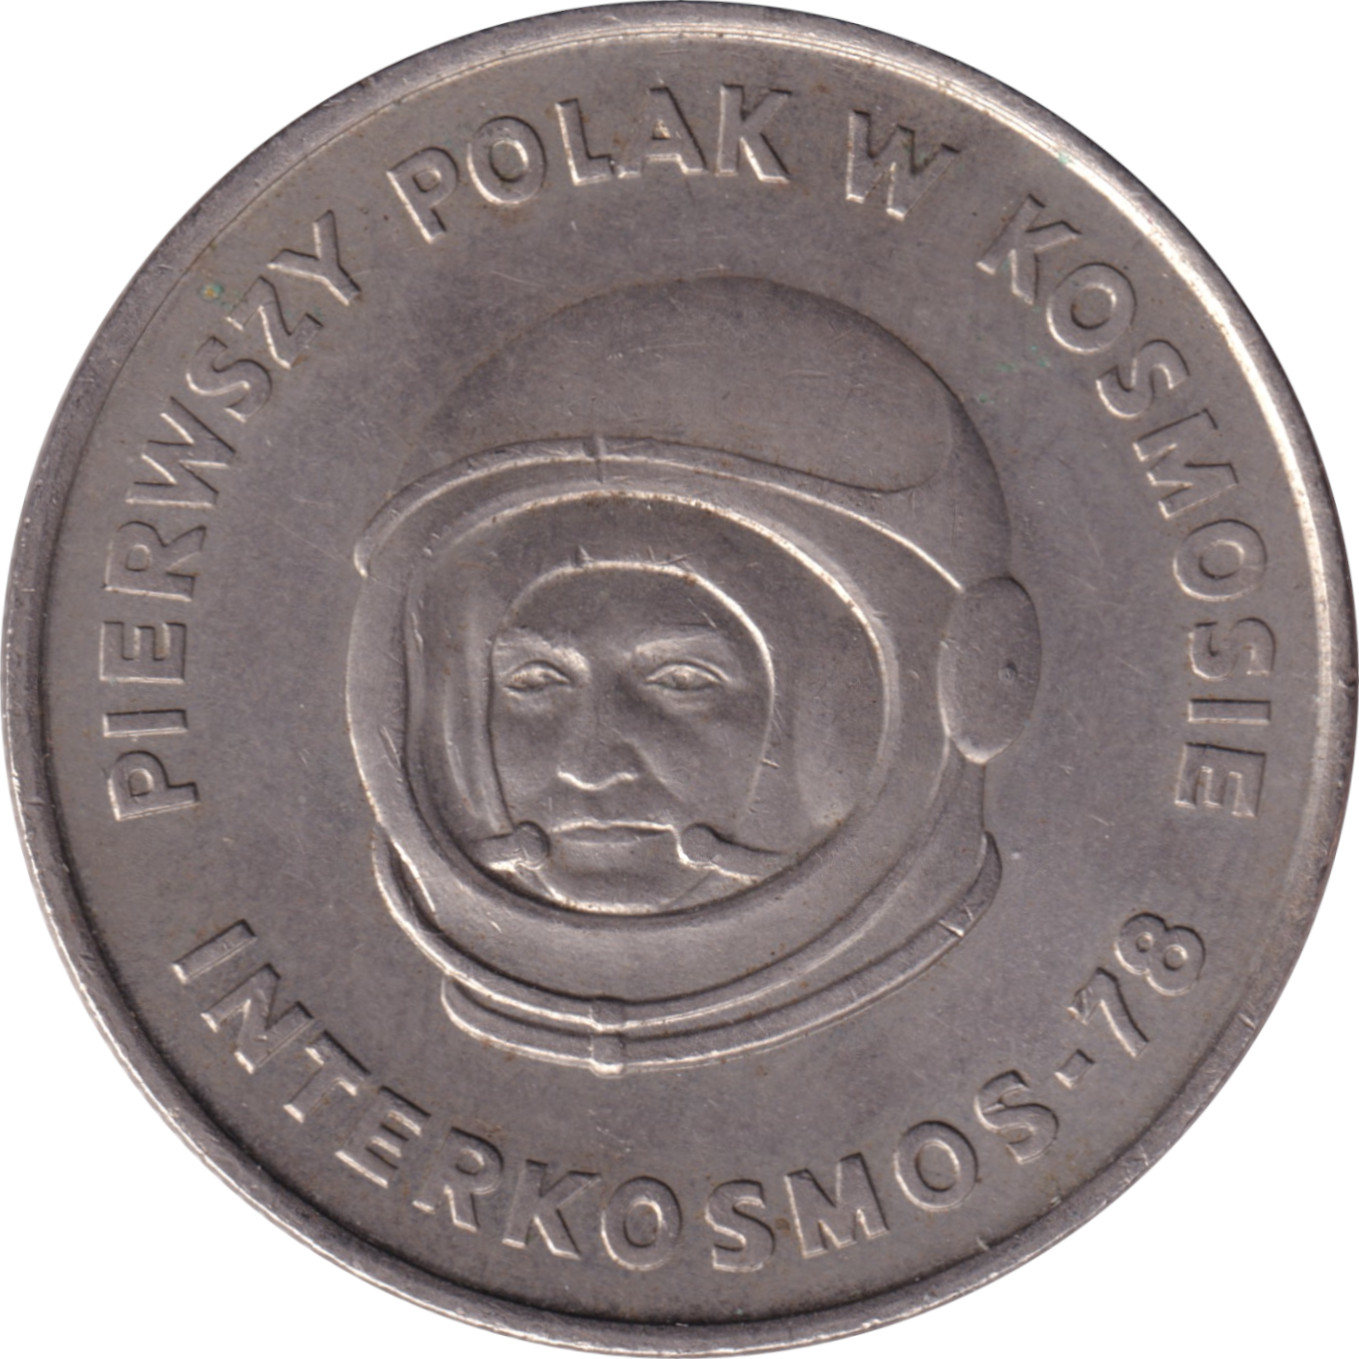 20 zlotych - Cosmonaute